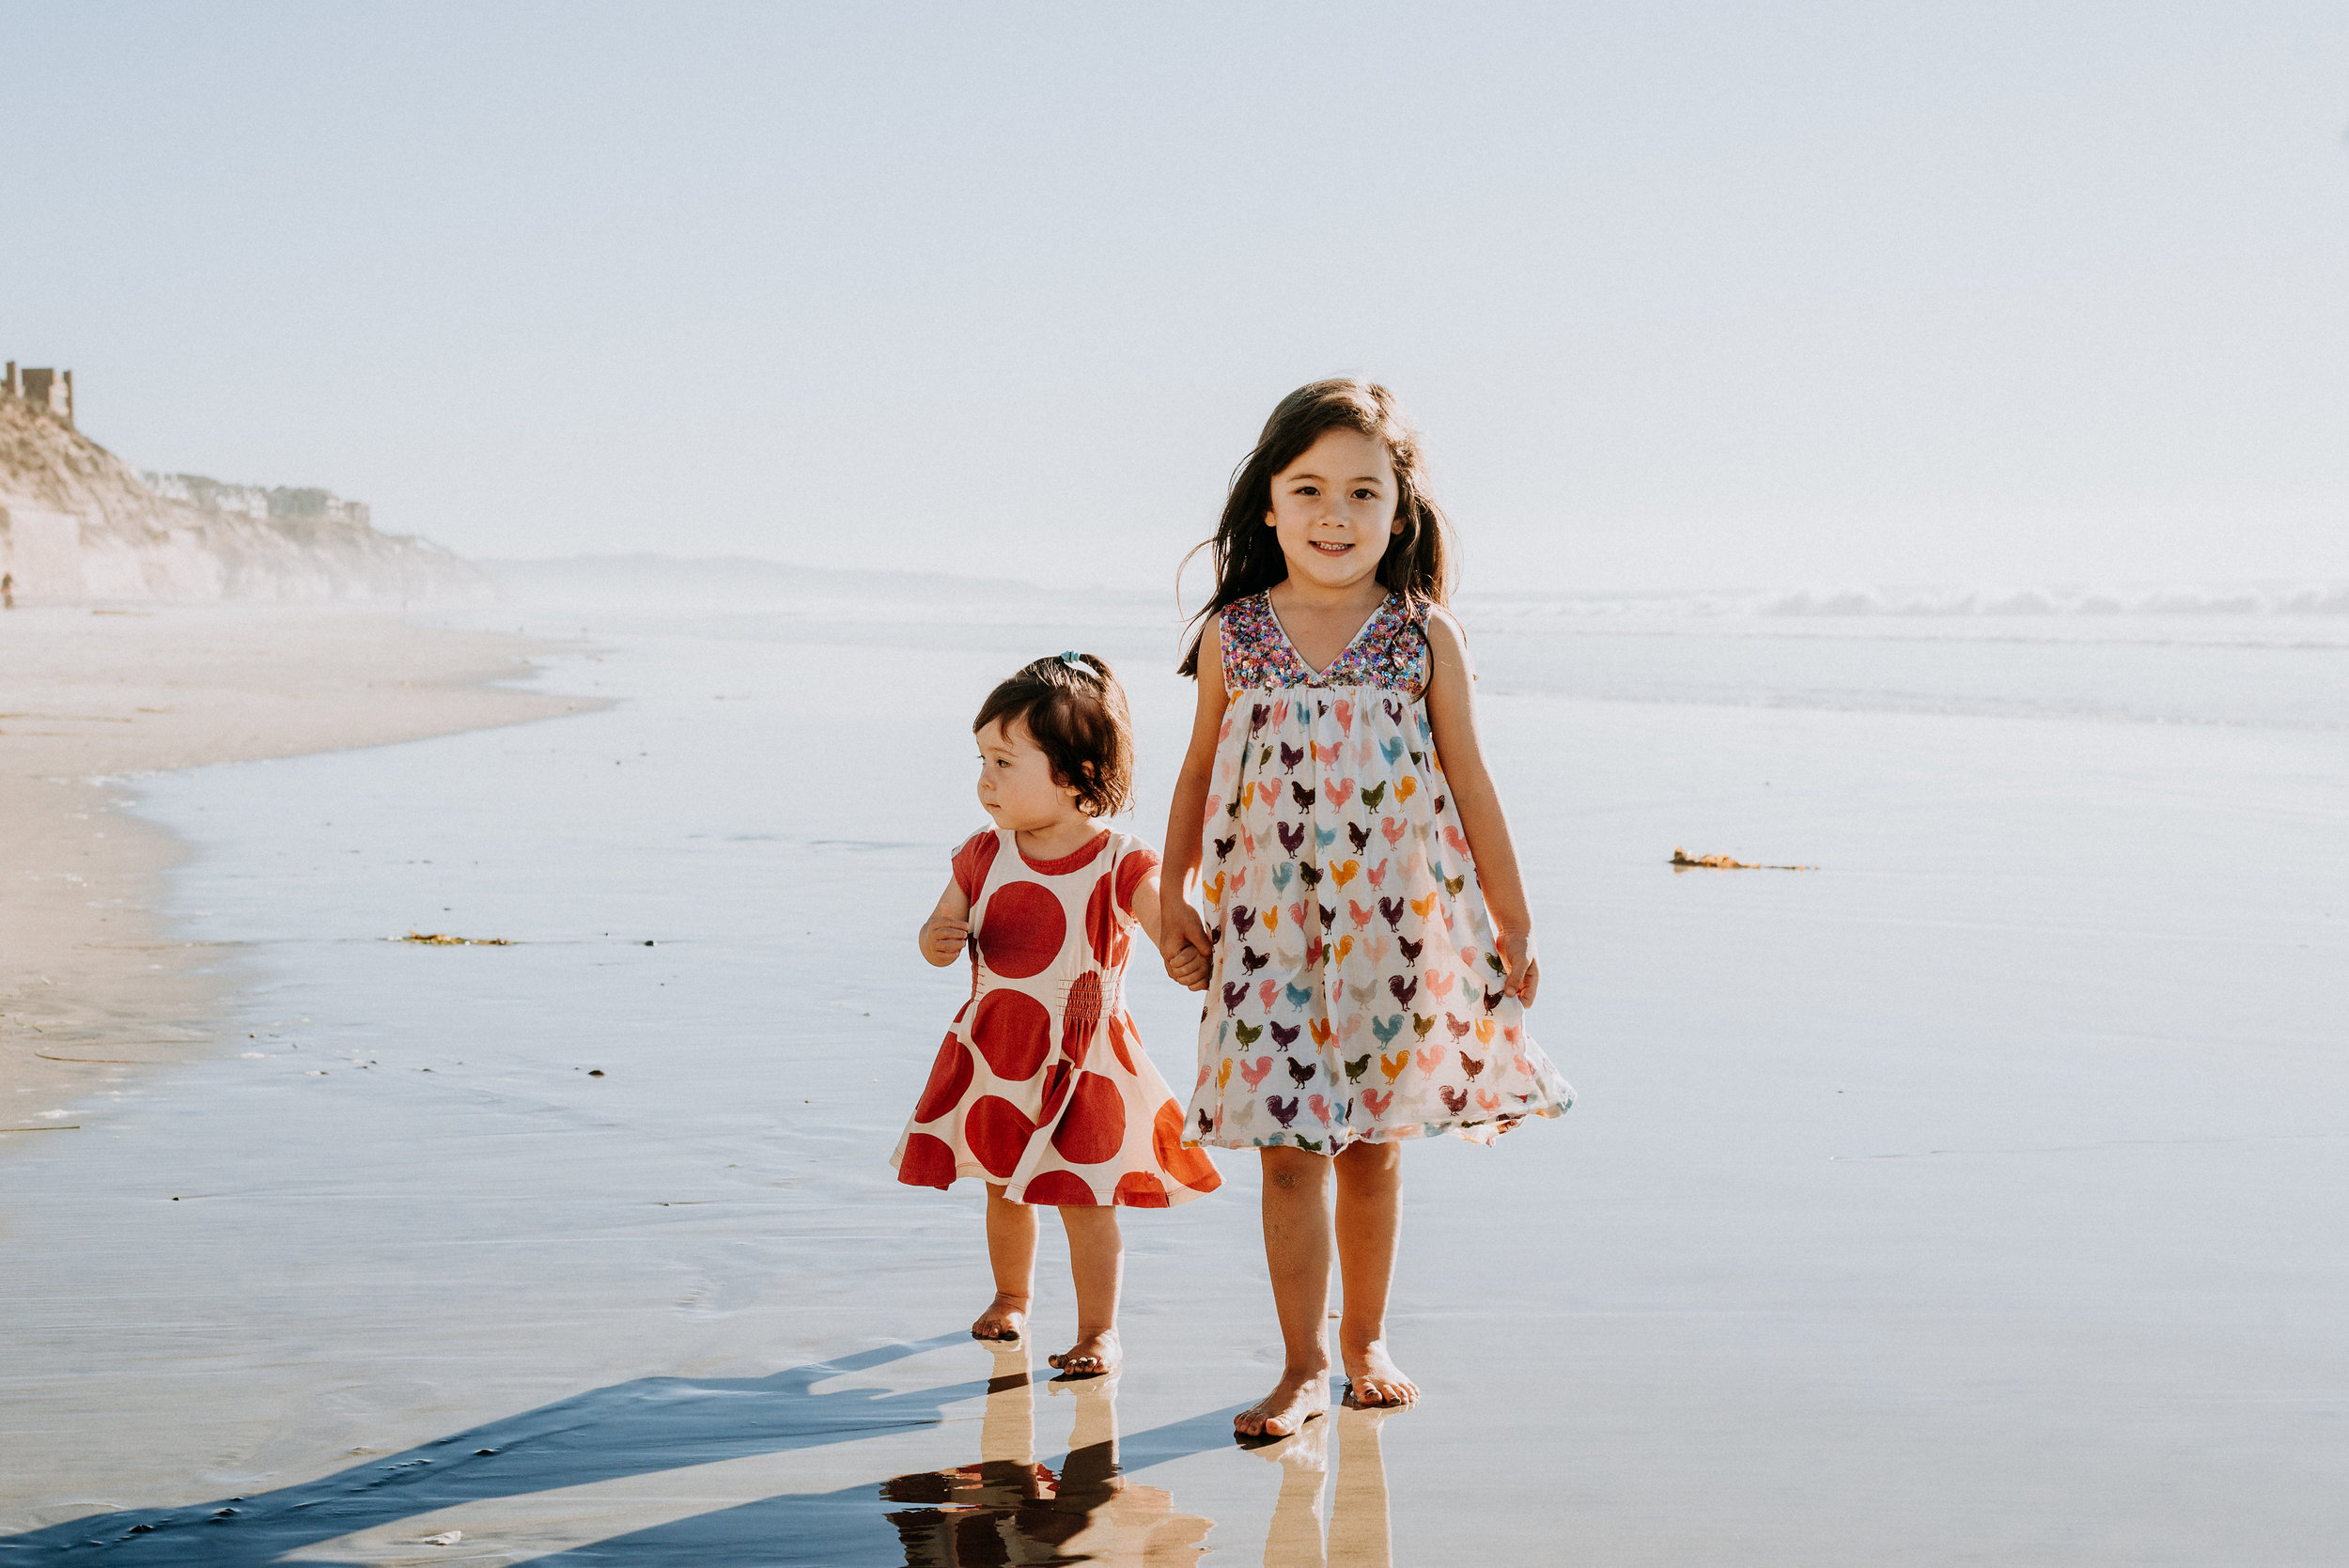 San Diego Family Portrait Photographer | Beach